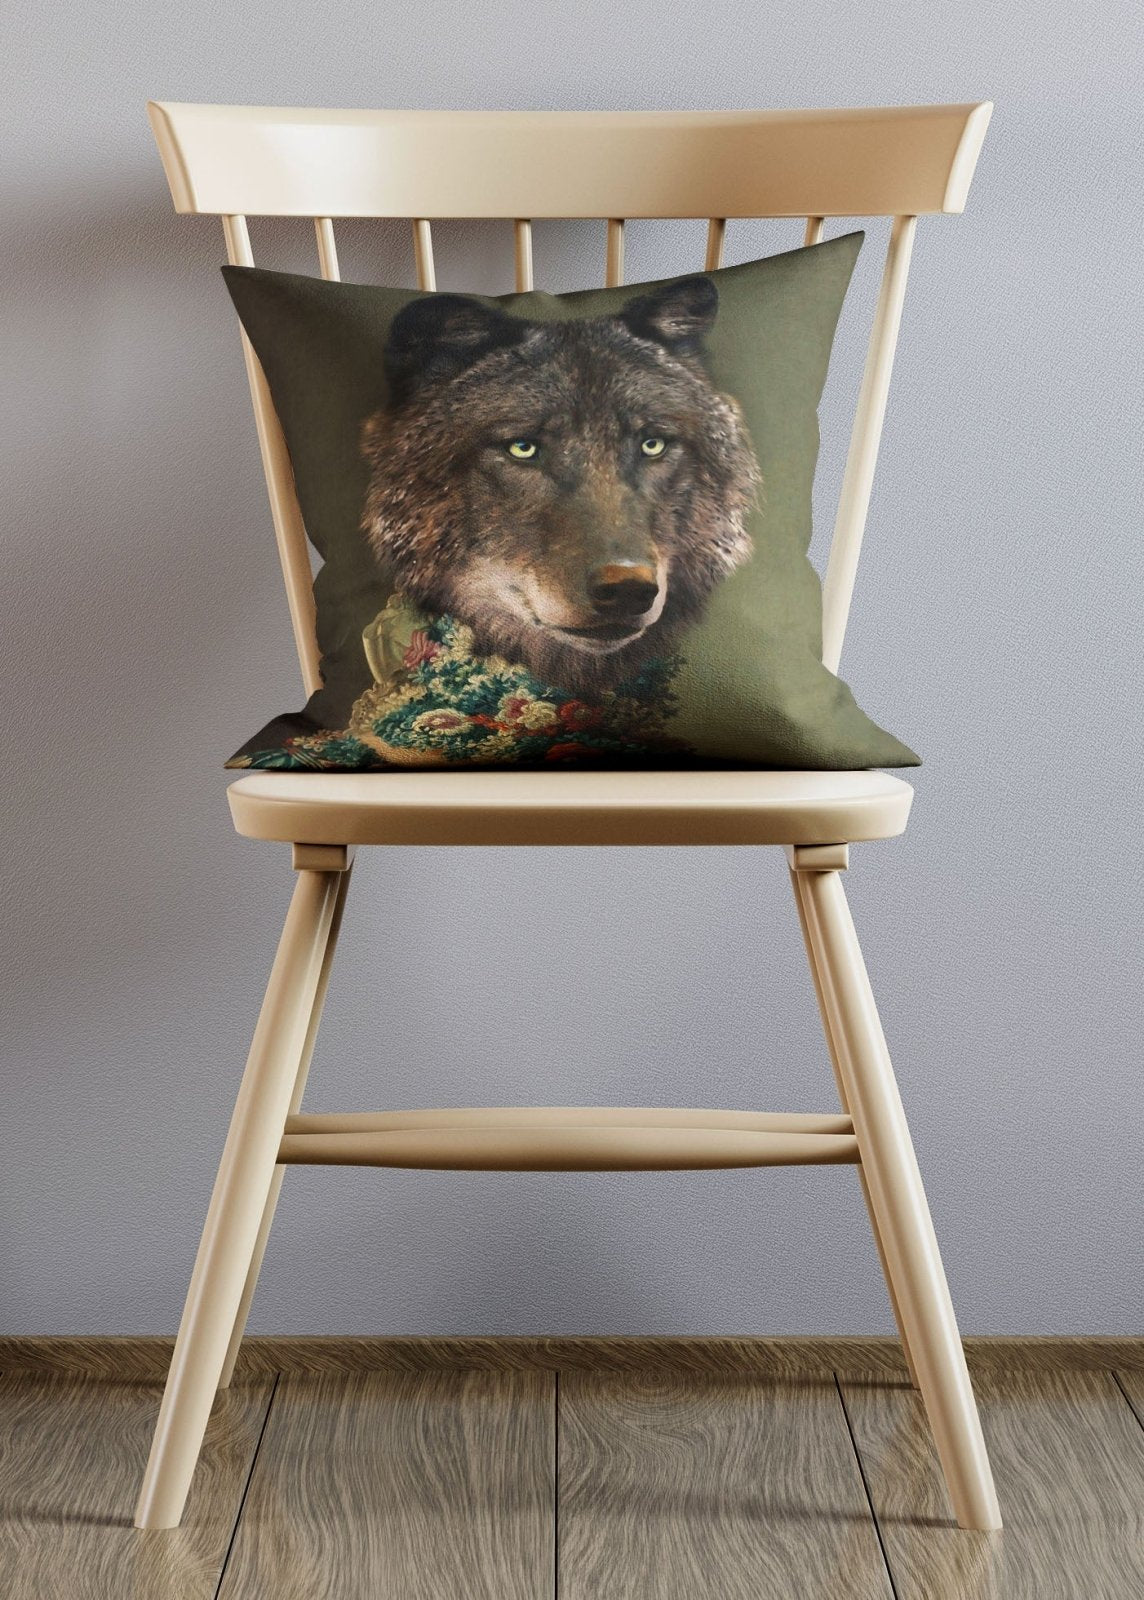 Wolf Lady Animal Portrait Cushion